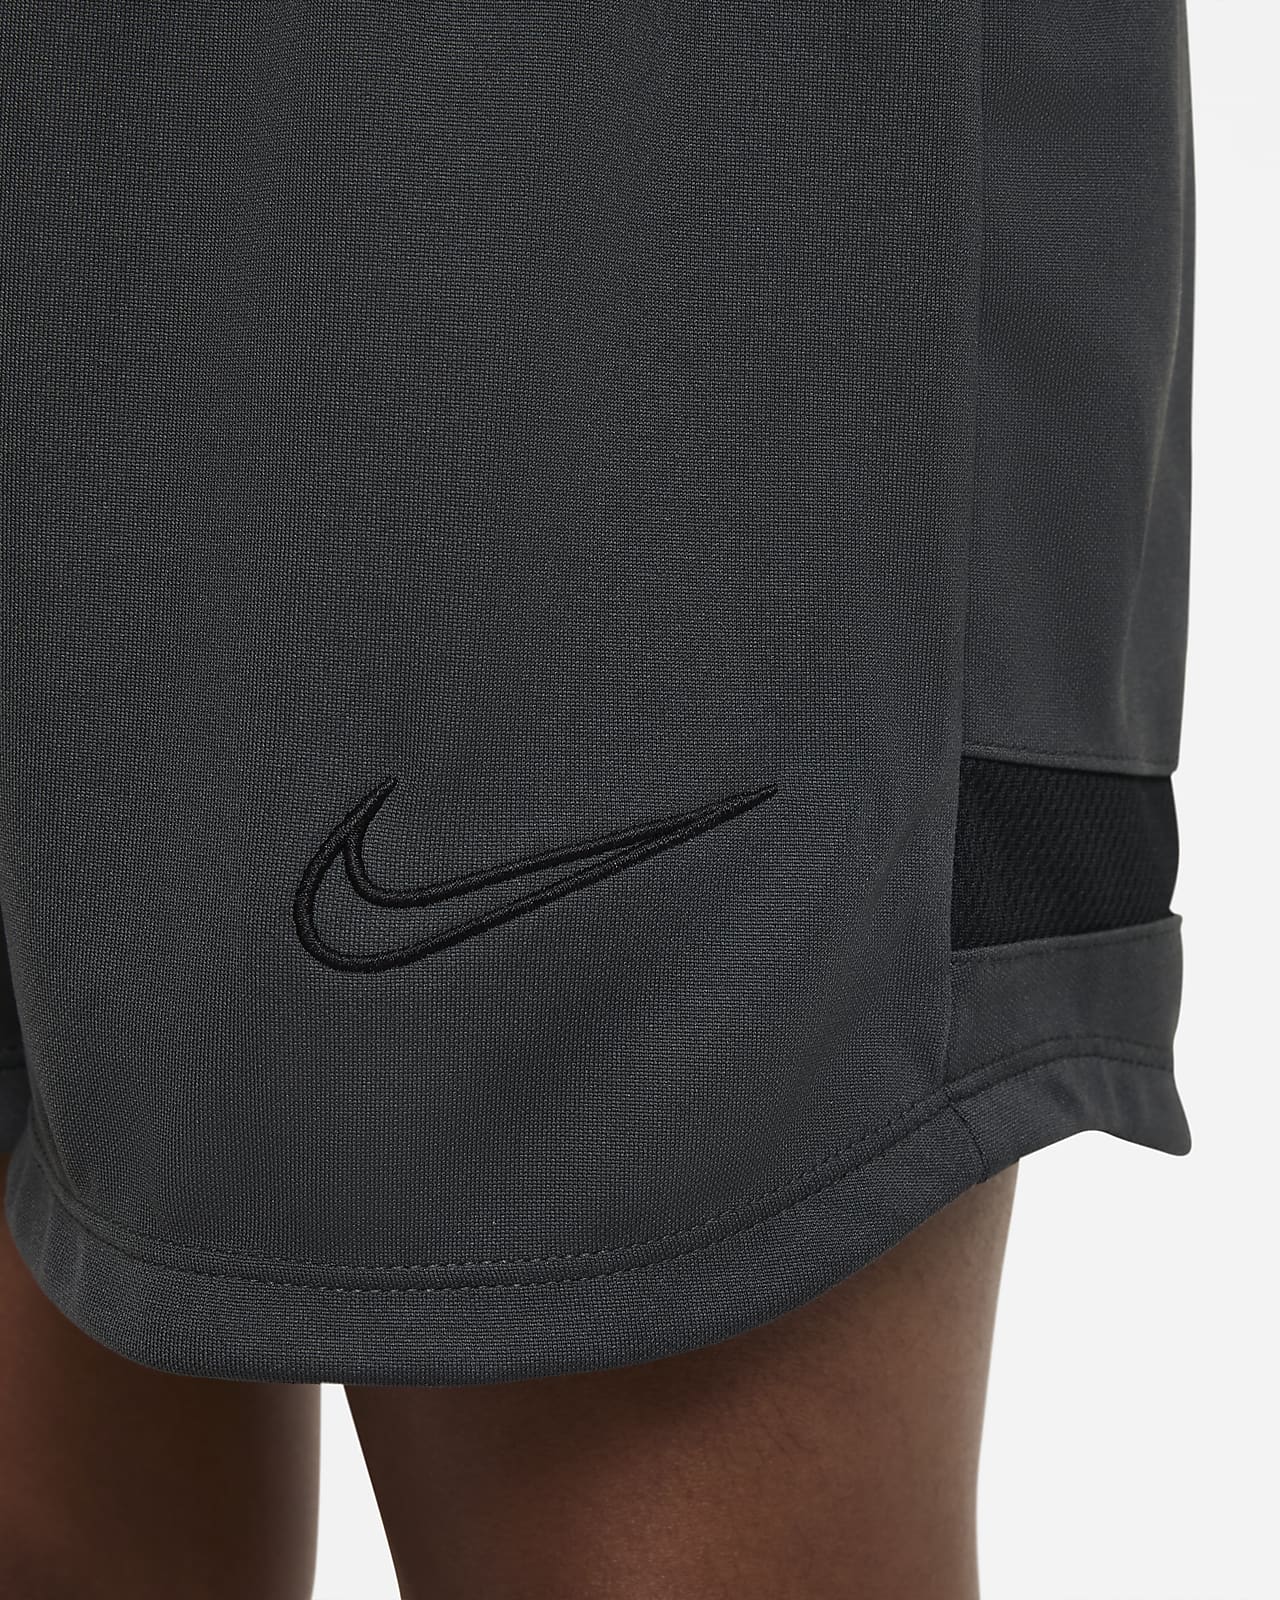 Nike Dri-FIT Big Knit Soccer Nike.com